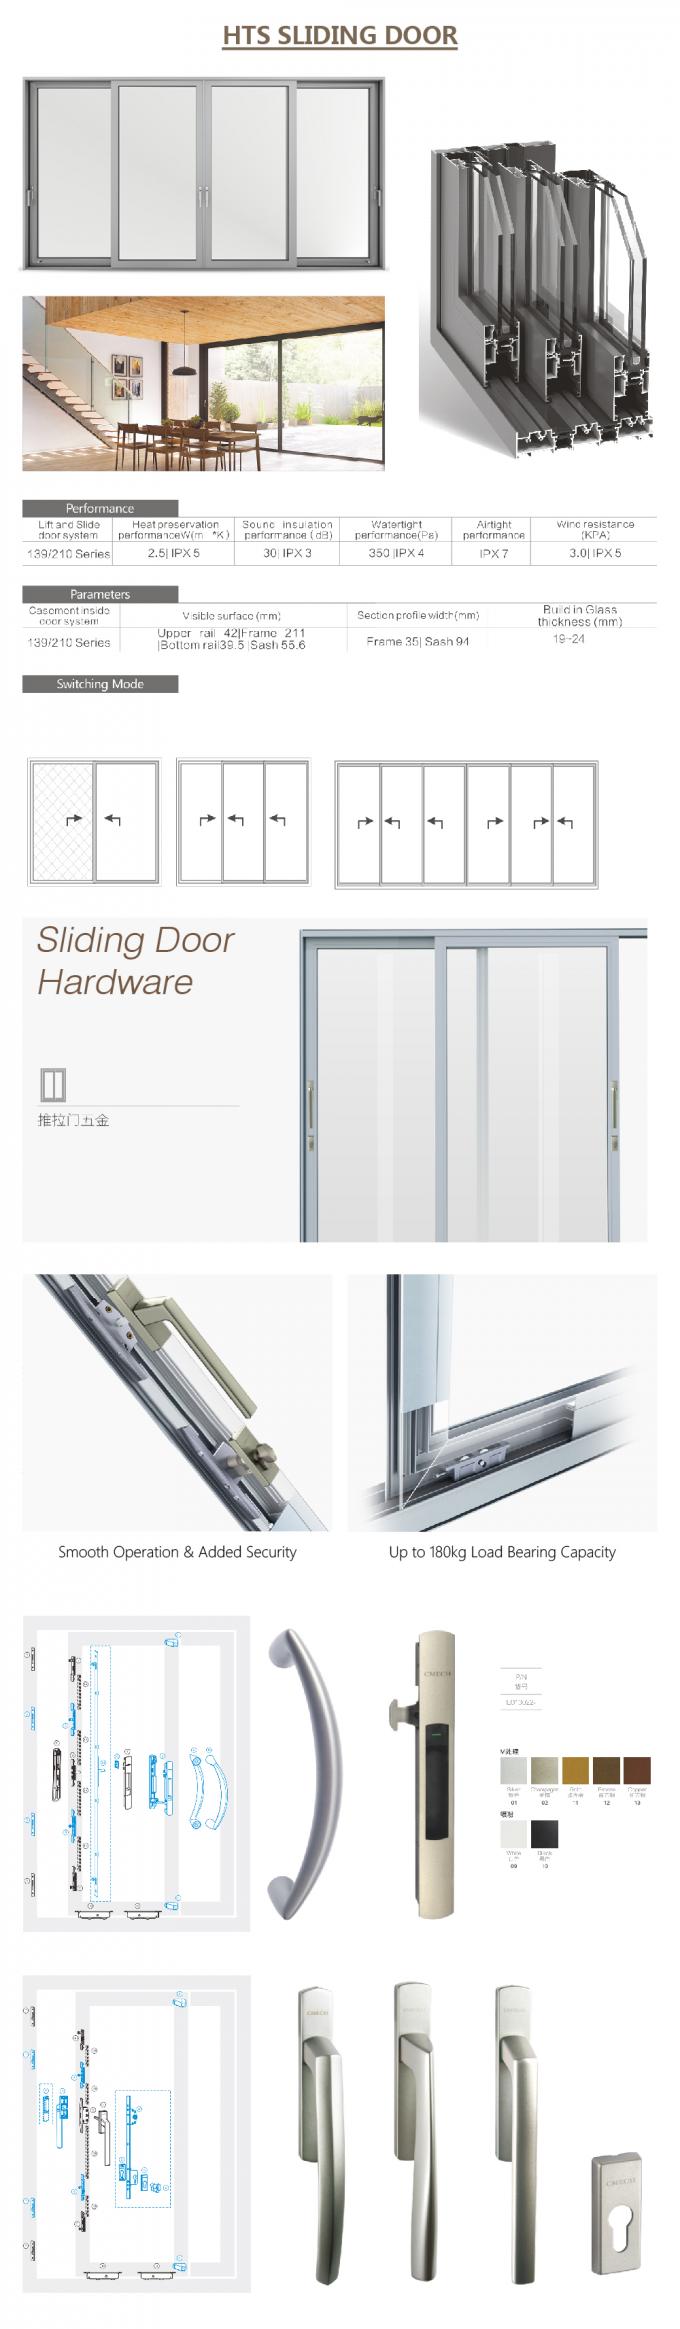 puerta de cristal de desplazamiento del panel, acordeón de la puerta deslizante, puerta deslizante de aluminio para el cuarto de baño, detalles de aluminio de la puerta deslizante